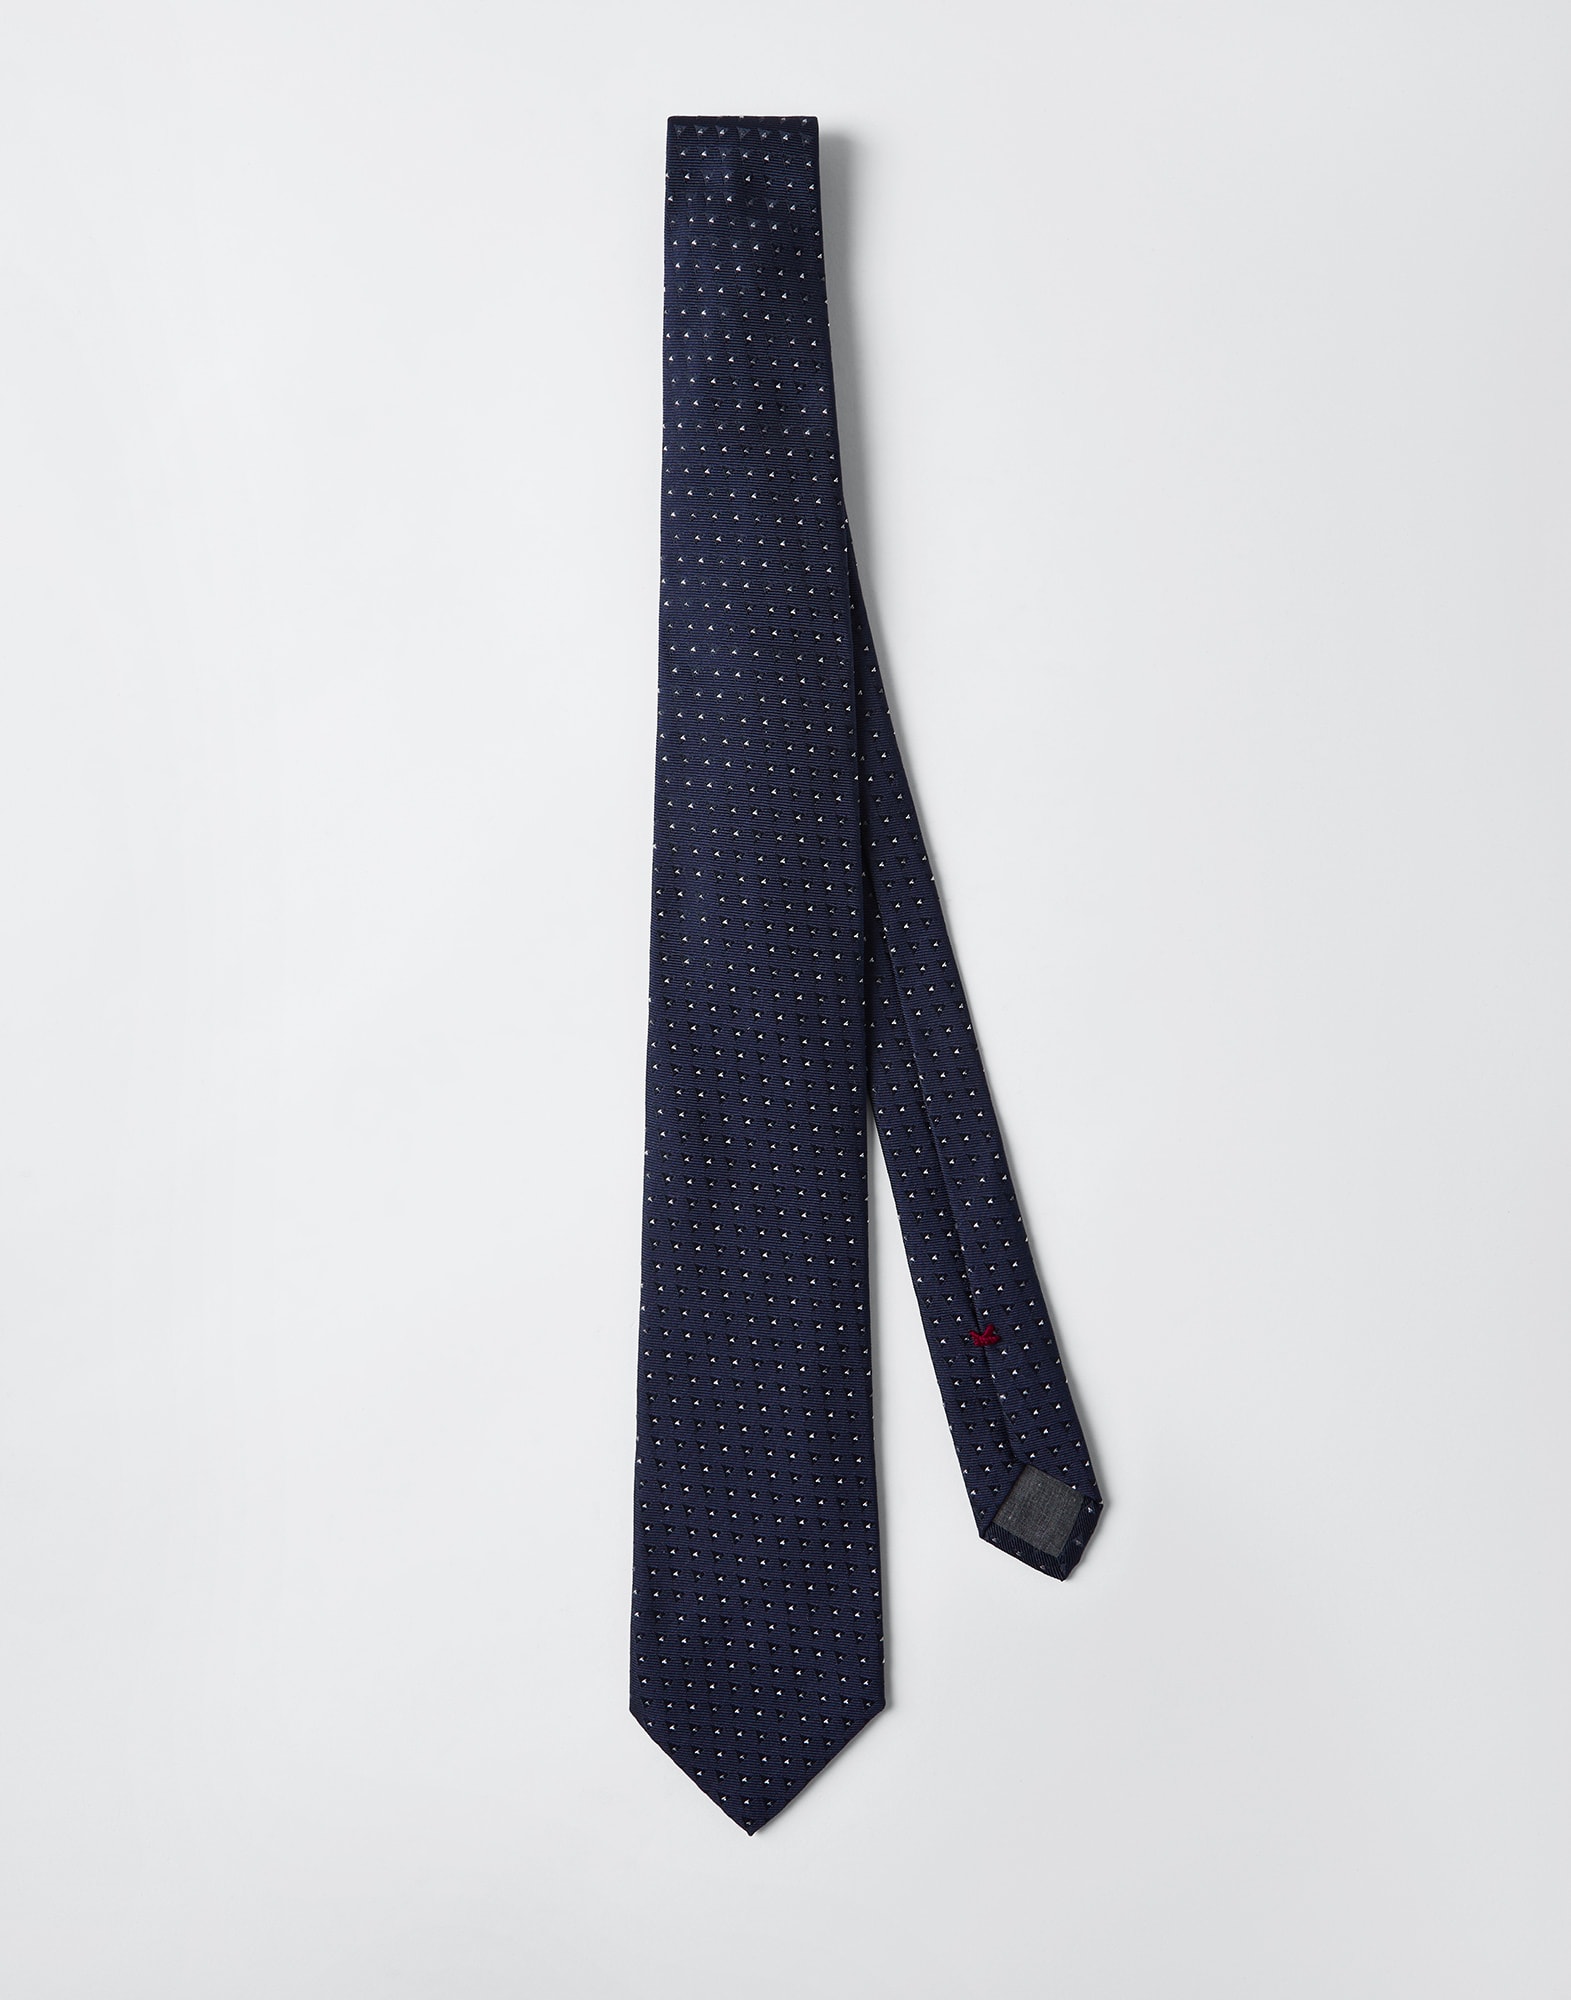 Cravatta in seta a pois Blu Navy Uomo - Brunello Cucinelli